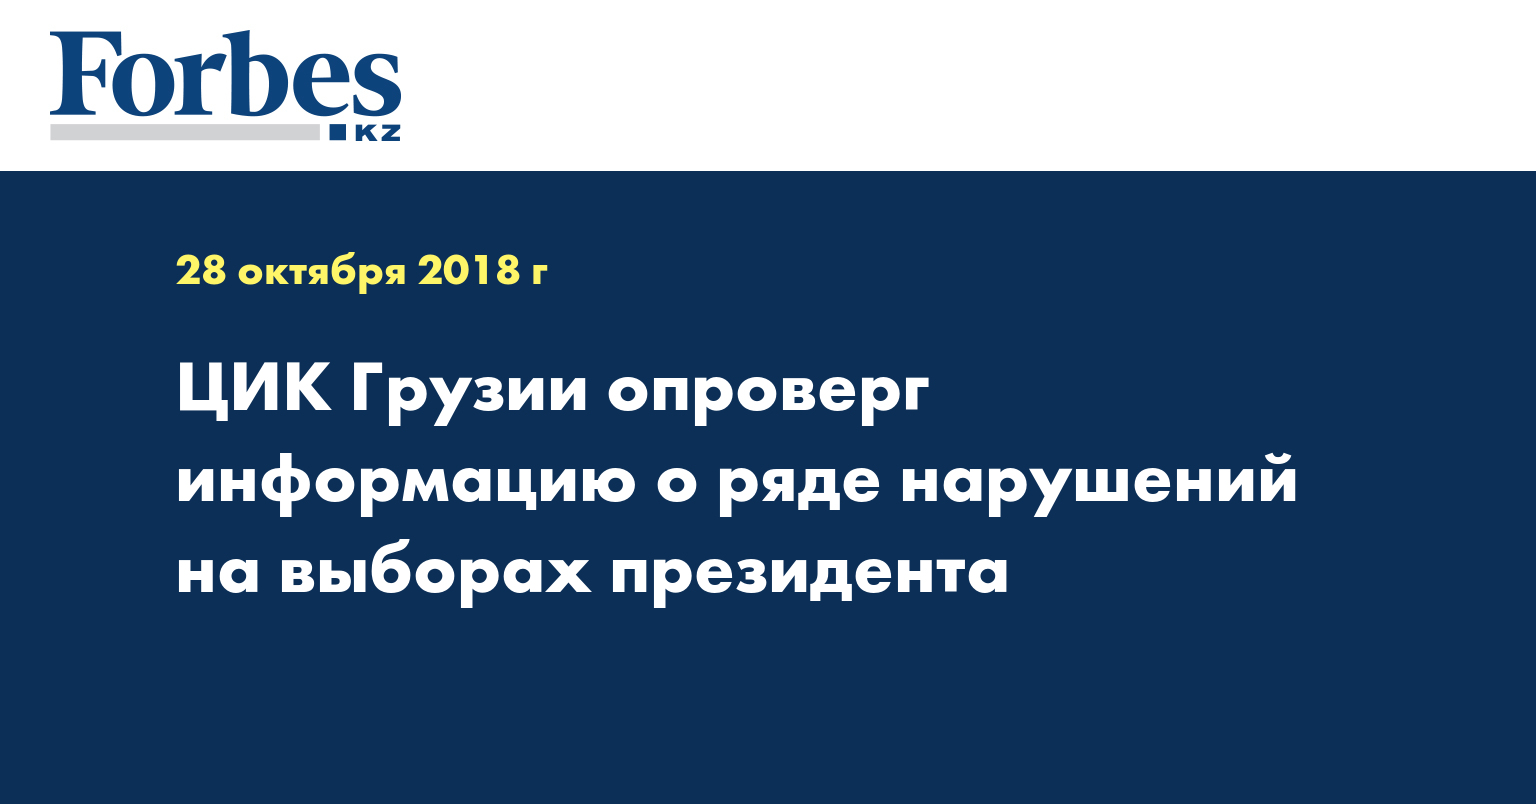 ЦИК Грузии опроверг информацию о ряде нарушений на выборах президента